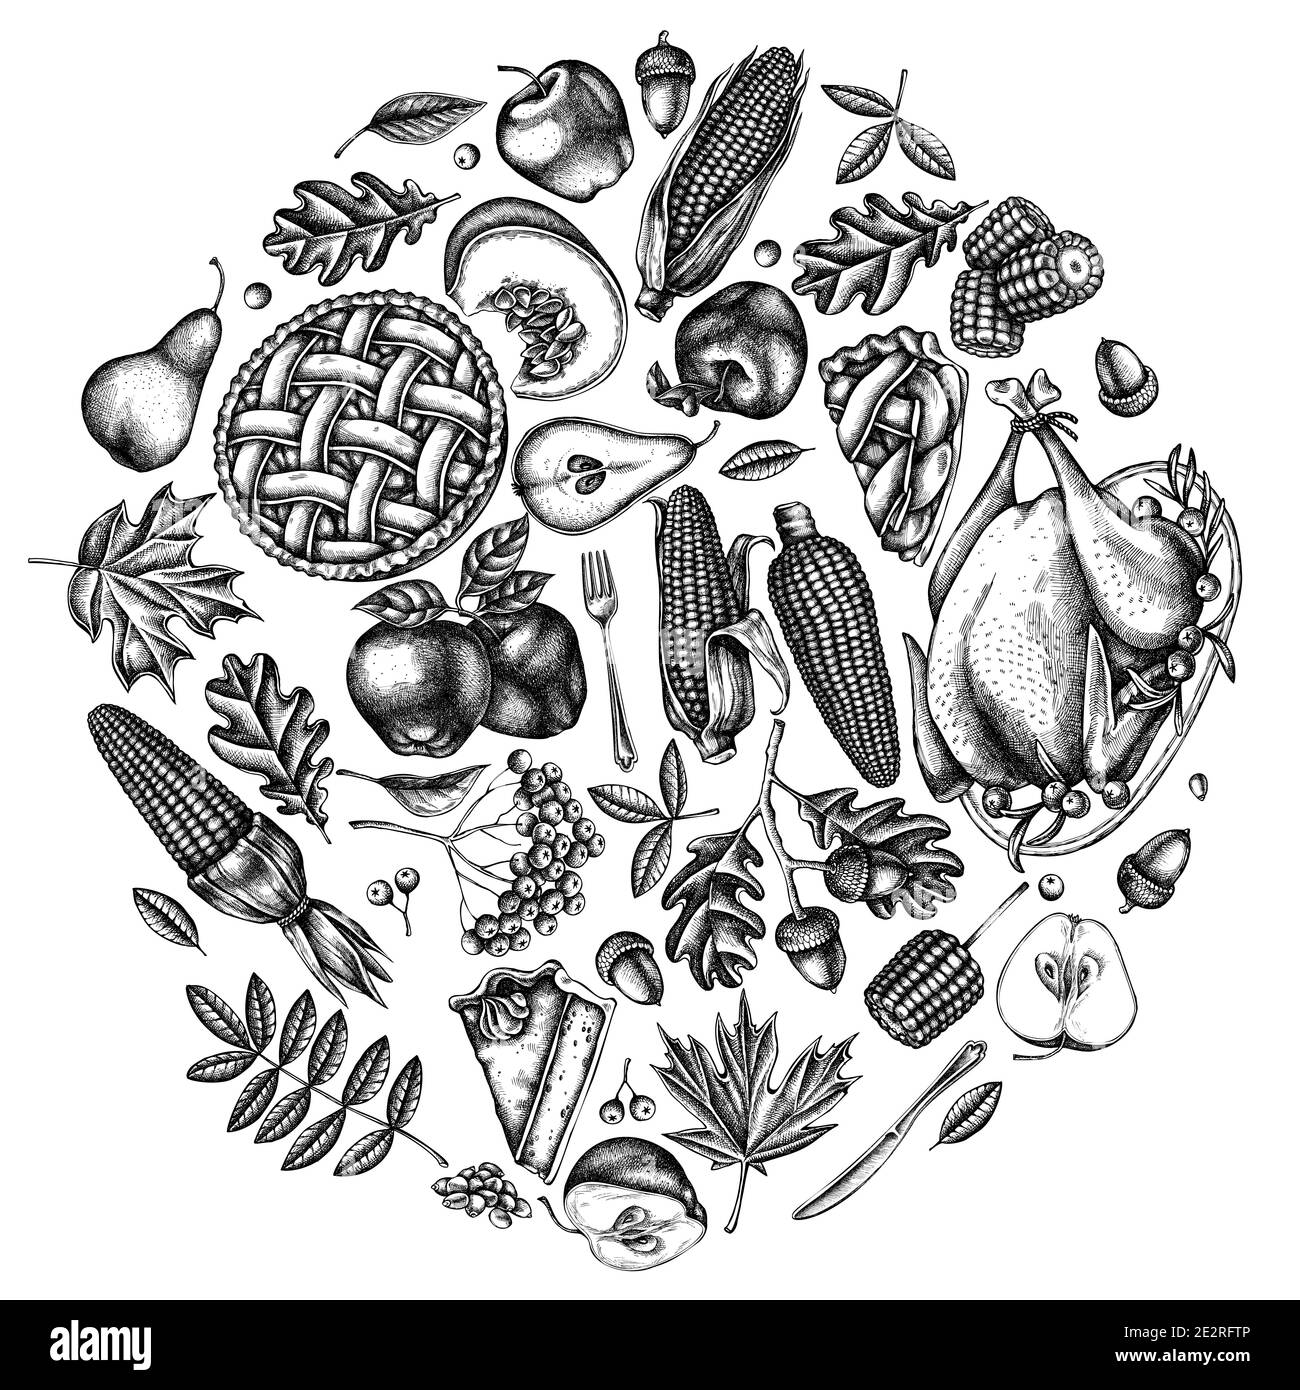 Motif rond avec citrouille noire et blanche, fourchette, couteau, poires, dinde, tarte à la citrouille, tarte aux pommes, maïs, pommes, rowan, érable, chêne Illustration de Vecteur